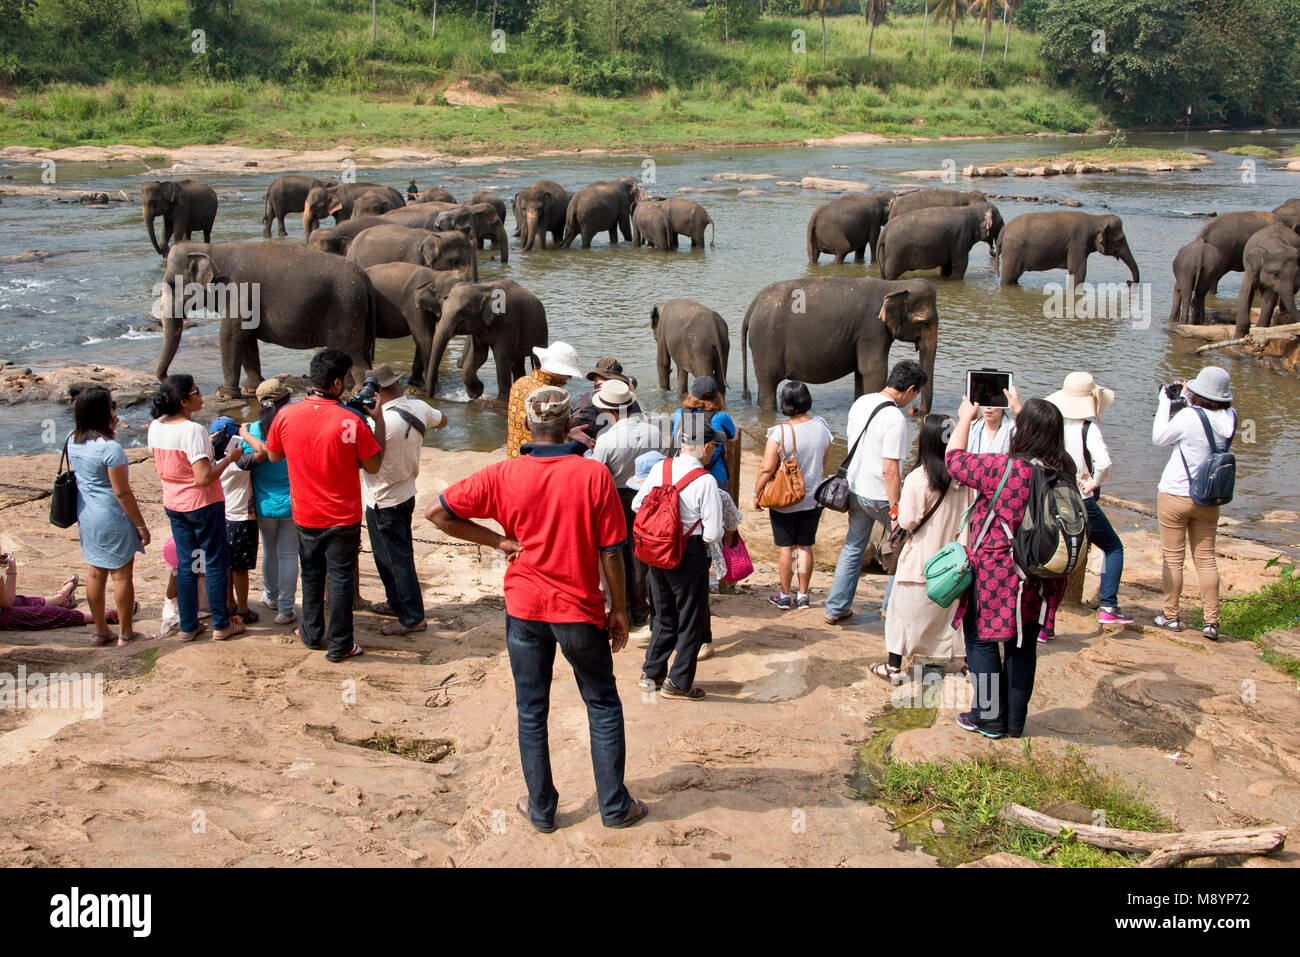 Los elefantes de Sri Lanka desde el Orfanato de Elefantes Pinnawala bañarse en el río con los turistas mirando y fotografiarlos. Foto de stock